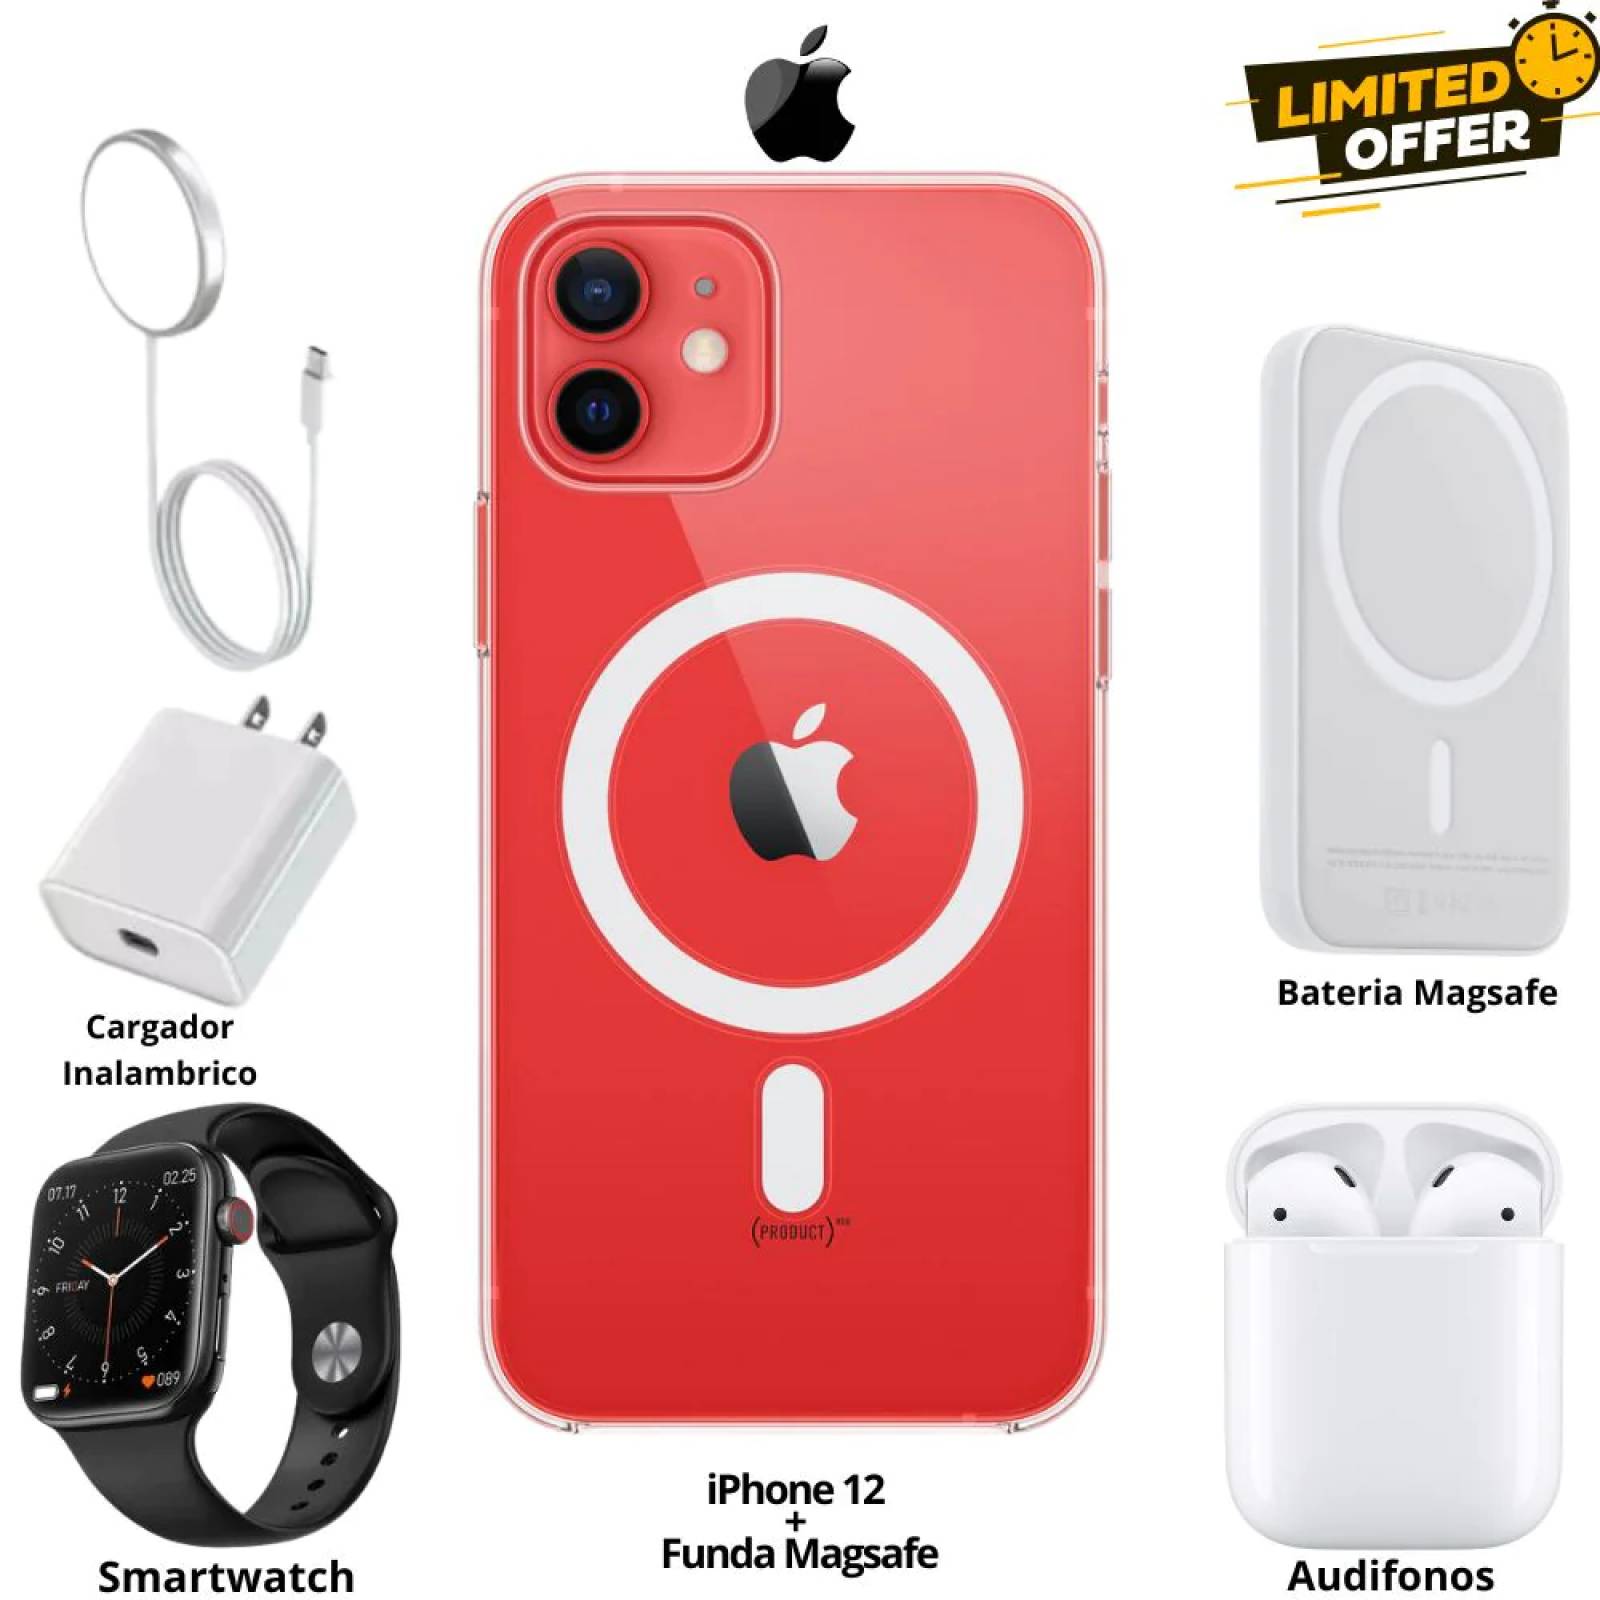 iPhone 12 64GB Rojo Reacondicionado Grado A + Estabilizador